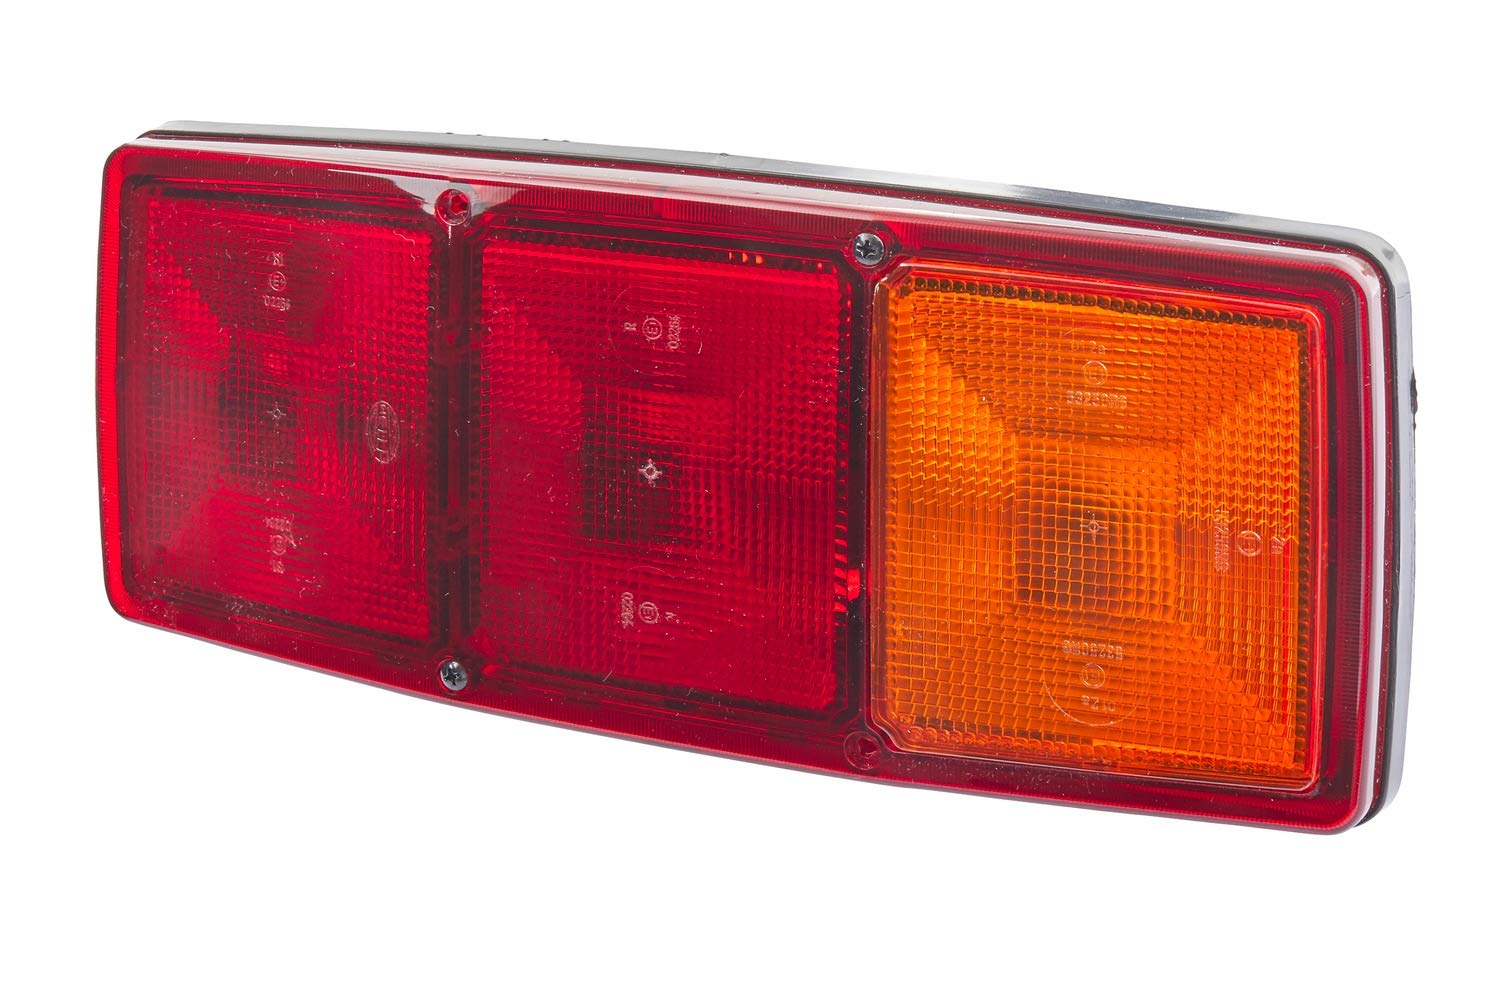 HELLA - Heckleuchte - Glühlampe - 12V - Einbau/geschraubt - Lichtscheibenfarbe: rot/gelb - Stecker: Flachstecker - rechts - Menge: 1 - 2SE 003 167-041 von Hella